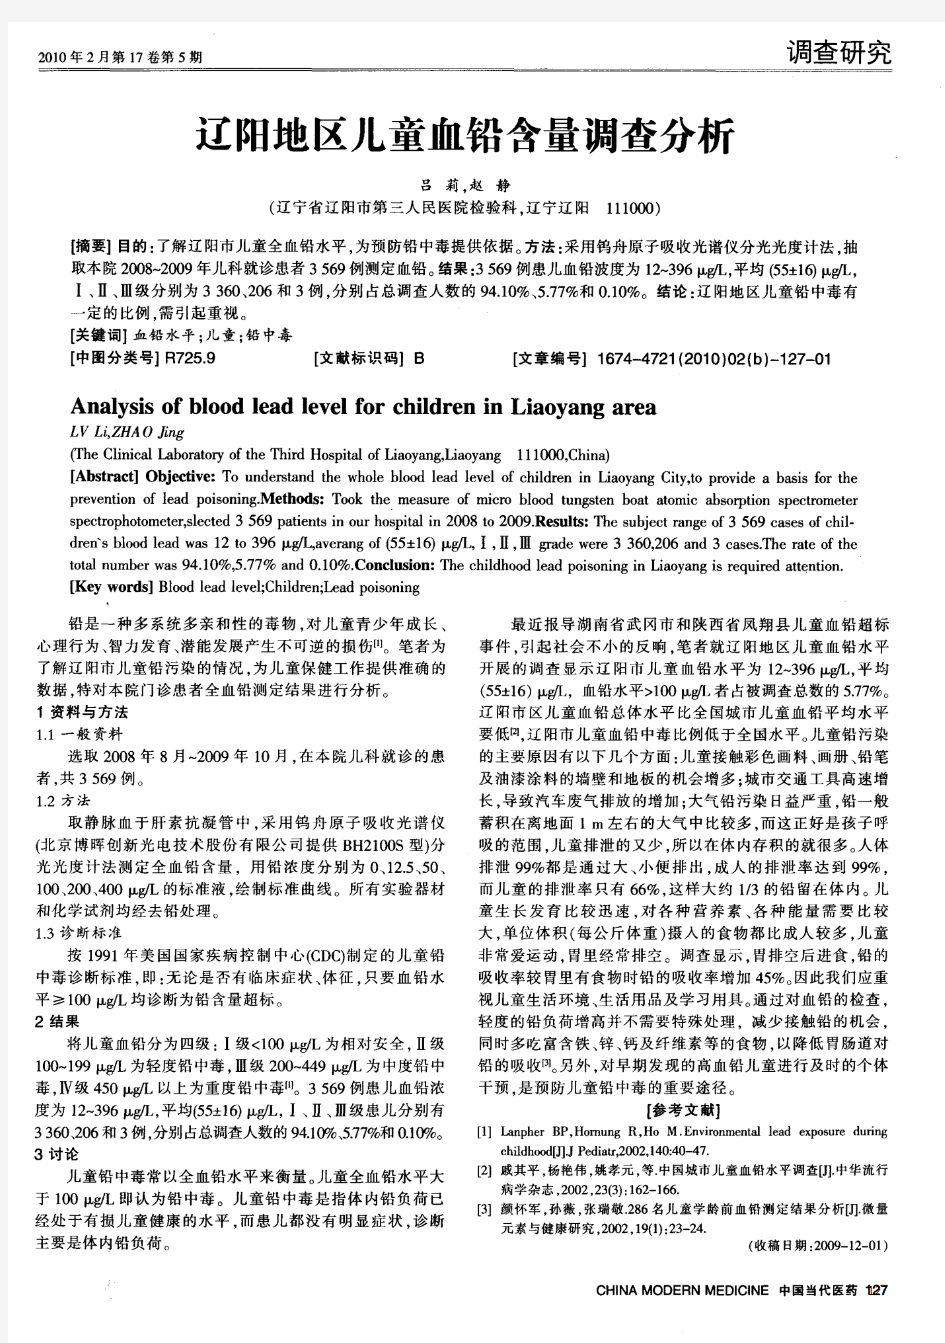 辽阳地区儿童血铅含量调查分析